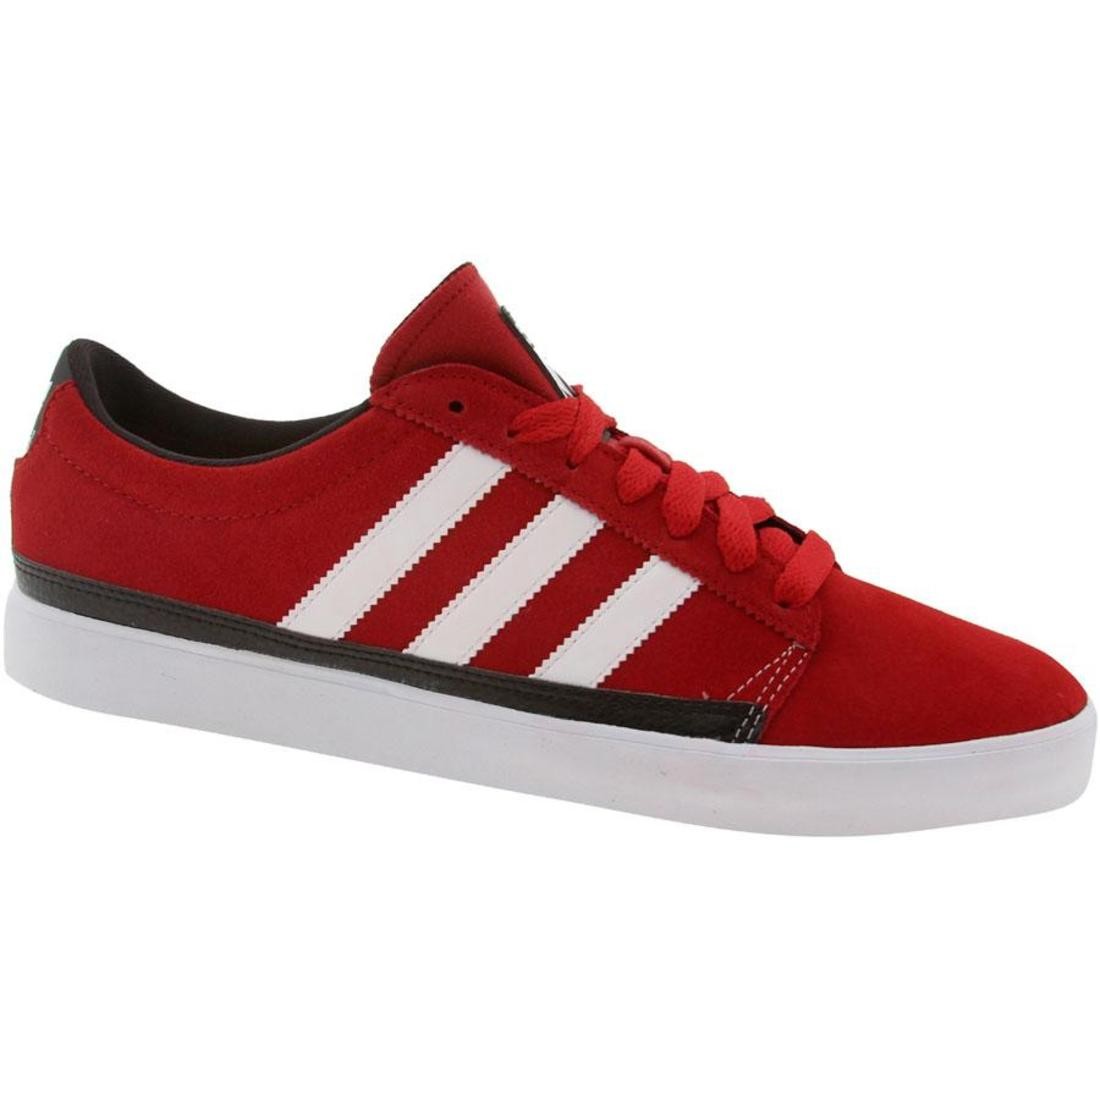 Adidas Skate Rayado Low (university red 